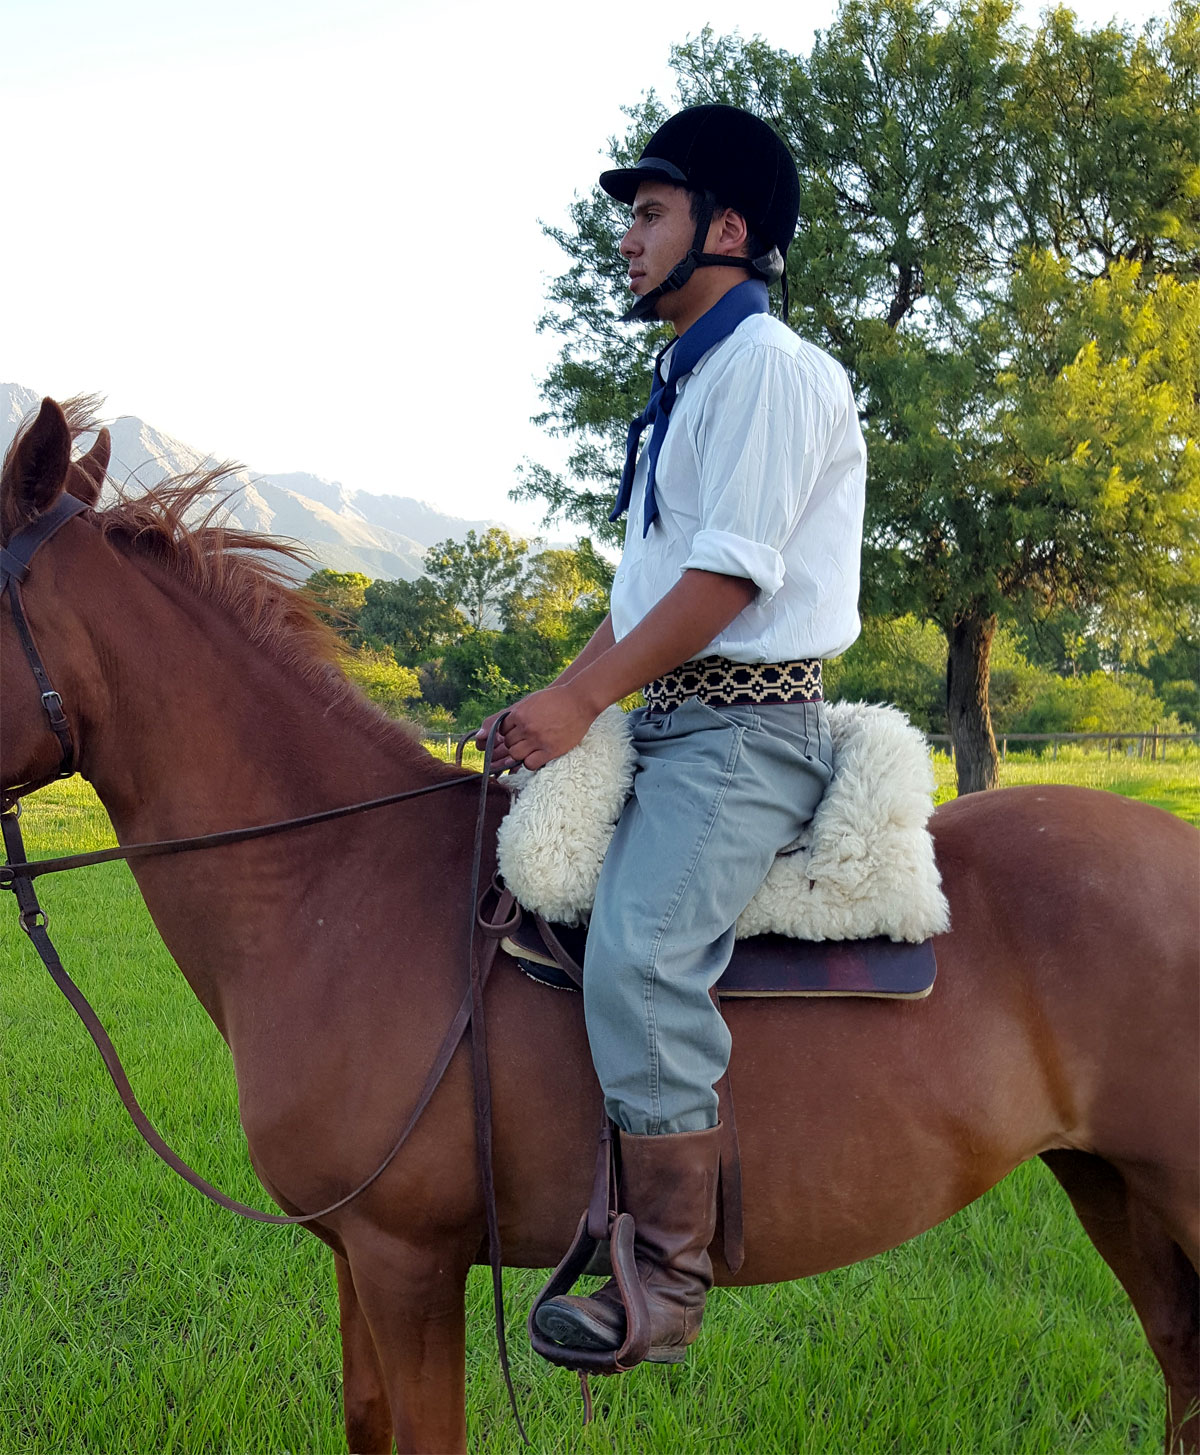 Sitting on the saddle - Correct position